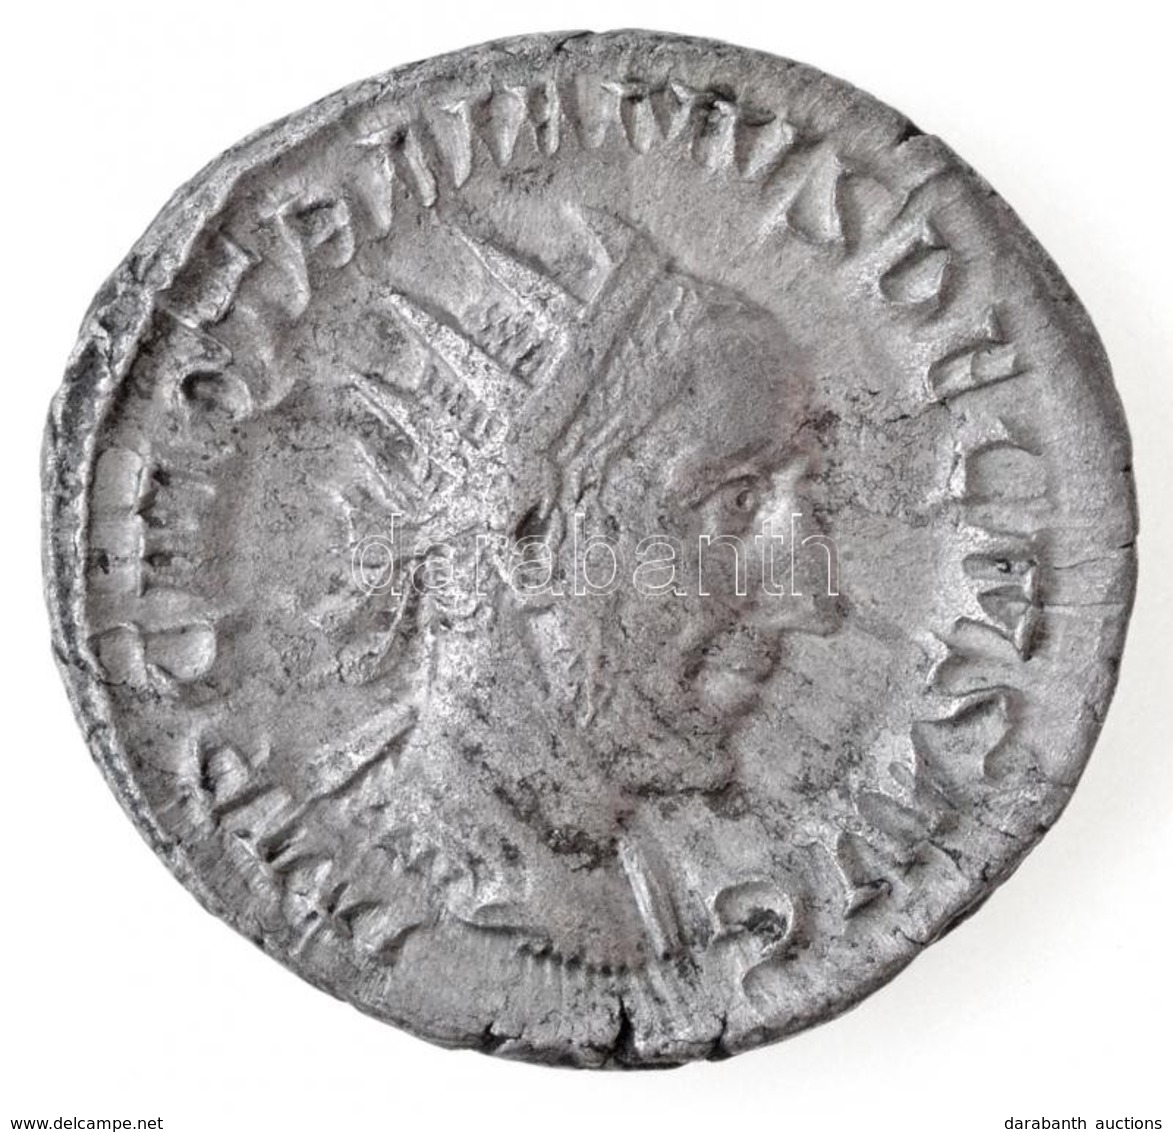 Római Birodalom / Róma / Traianus Decius 249-251. Antoninianus Ag (4,6g) T:2
Roman Empire / Rome / Trajan Decius 249-251 - Unclassified